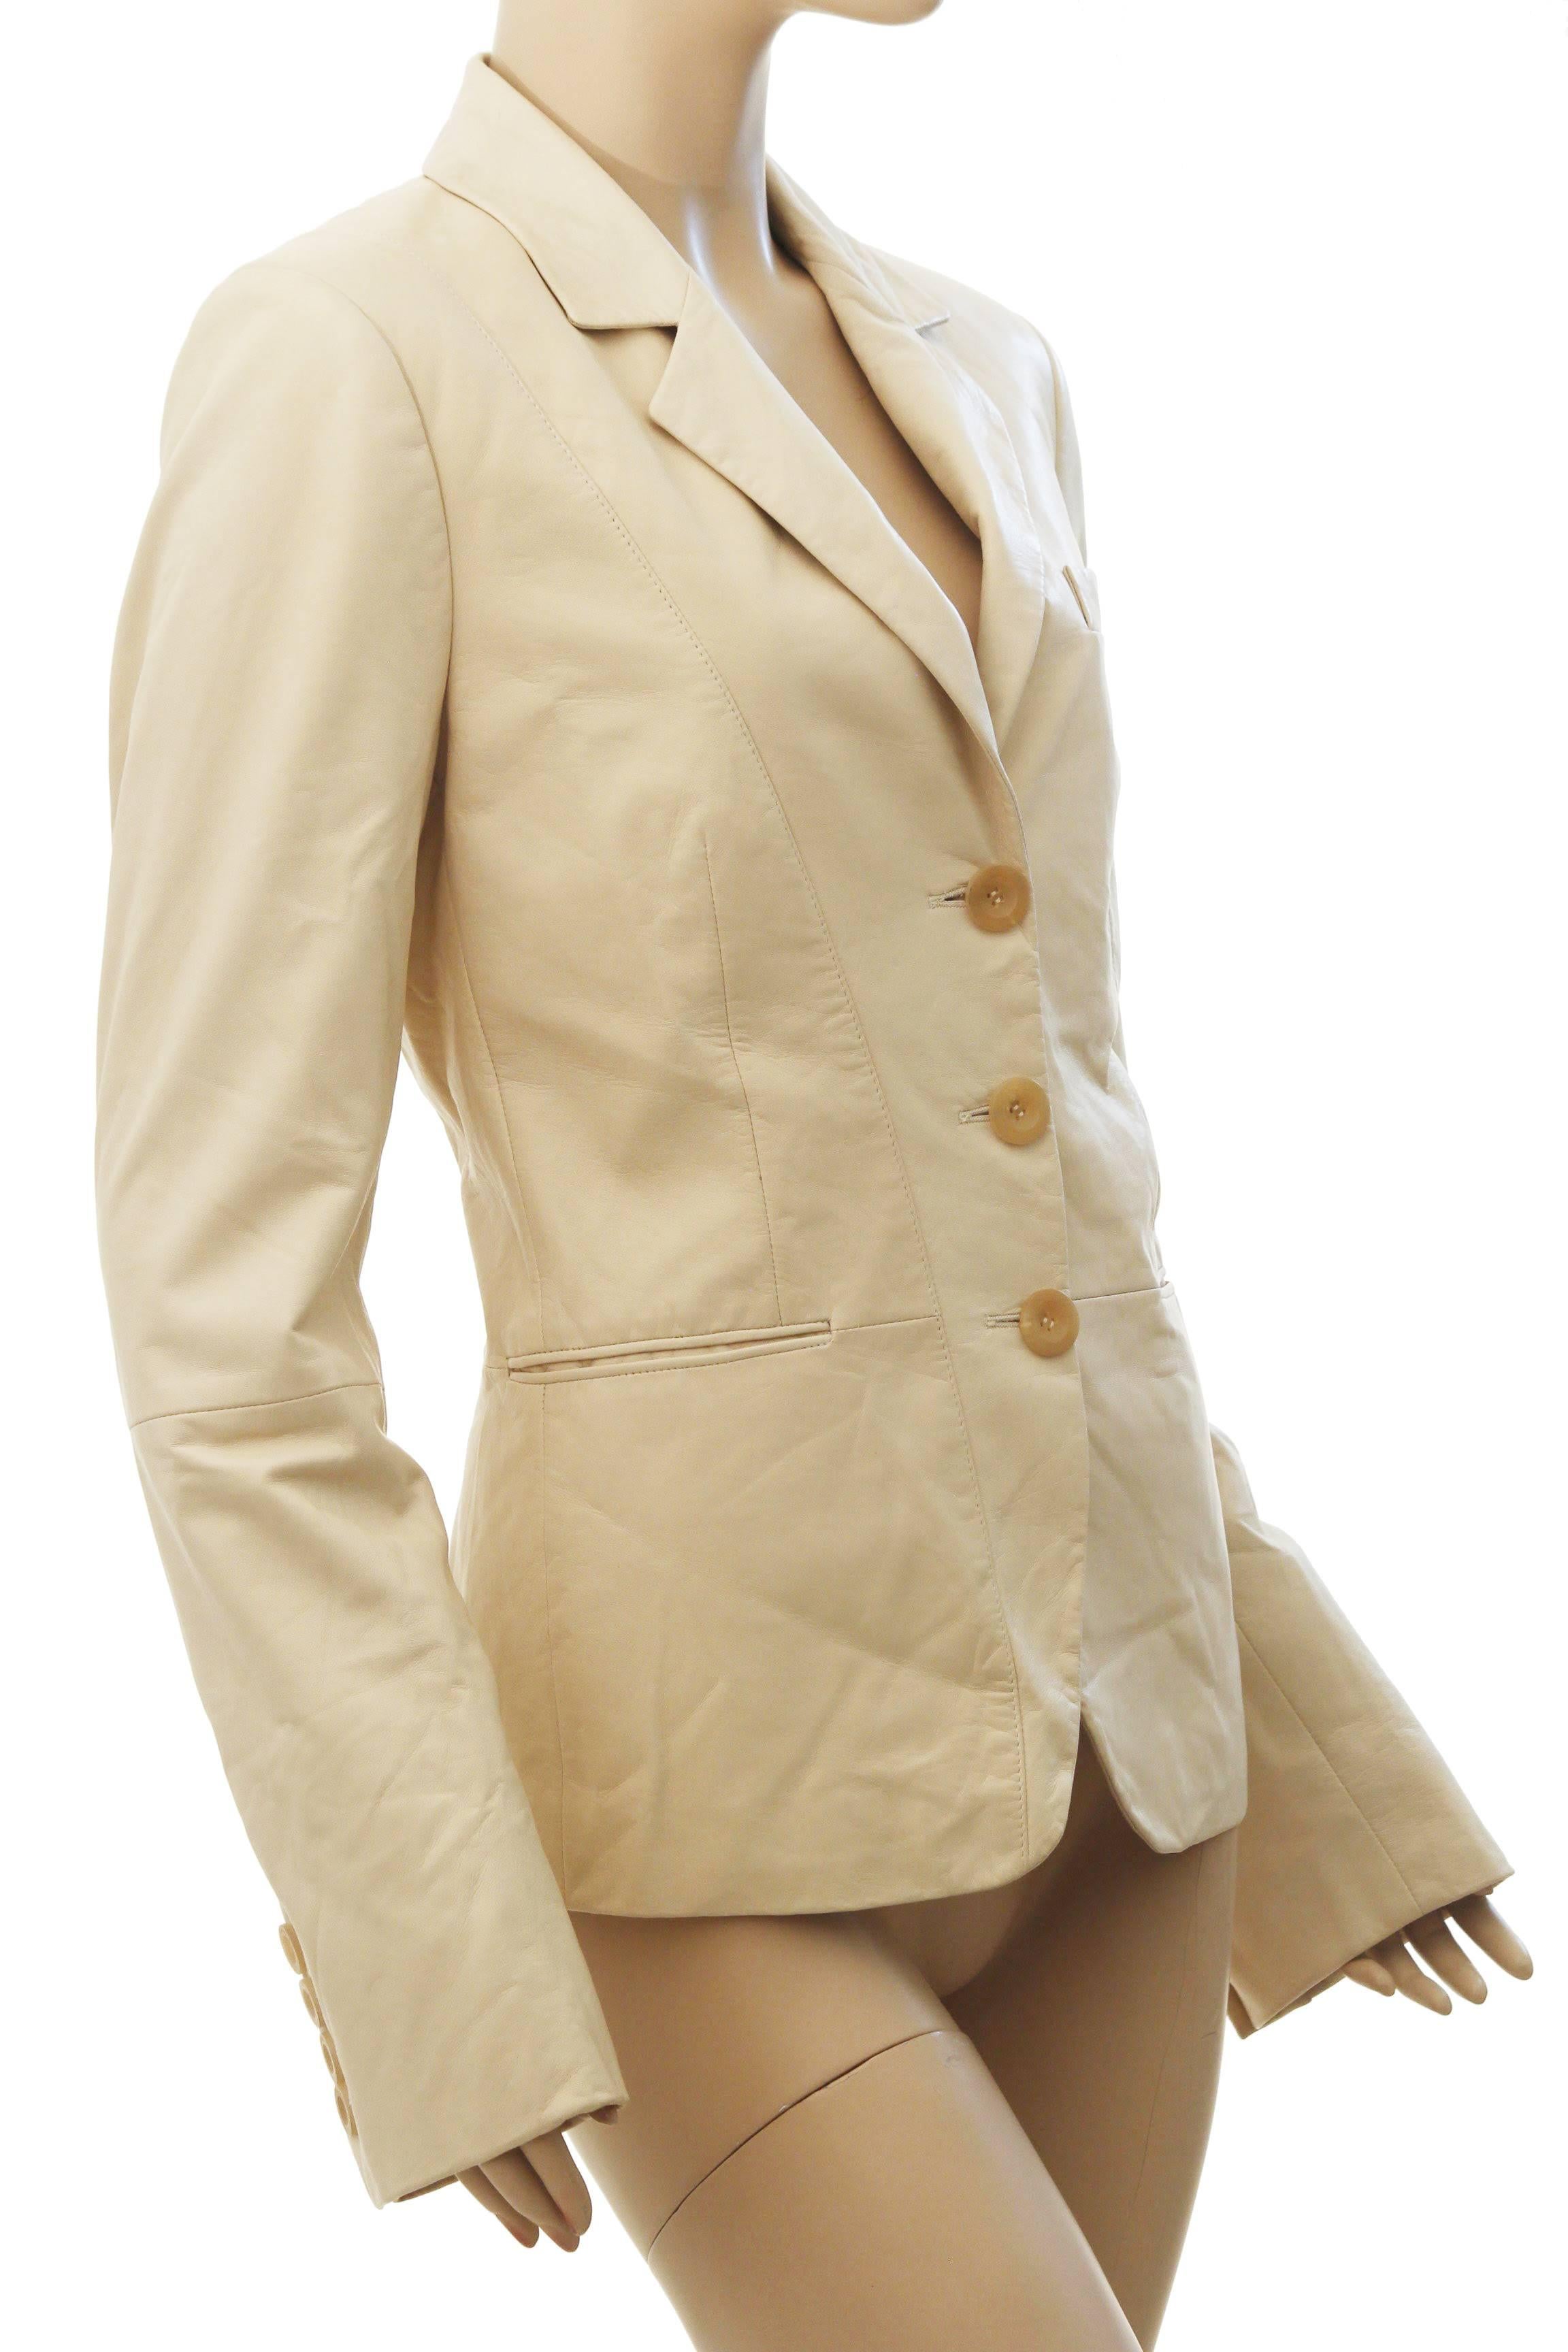 Hier ist eine leichte Lederjacke von Salvatore Ferragamo, die wahrscheinlich vor 2011 hergestellt wurde.  Sie ist aus geschmeidigem creme- oder vanillefarbenem Leder gefertigt und mit Taschen an jeder Hüfte versehen!

Eine unglaublich geschmeidige